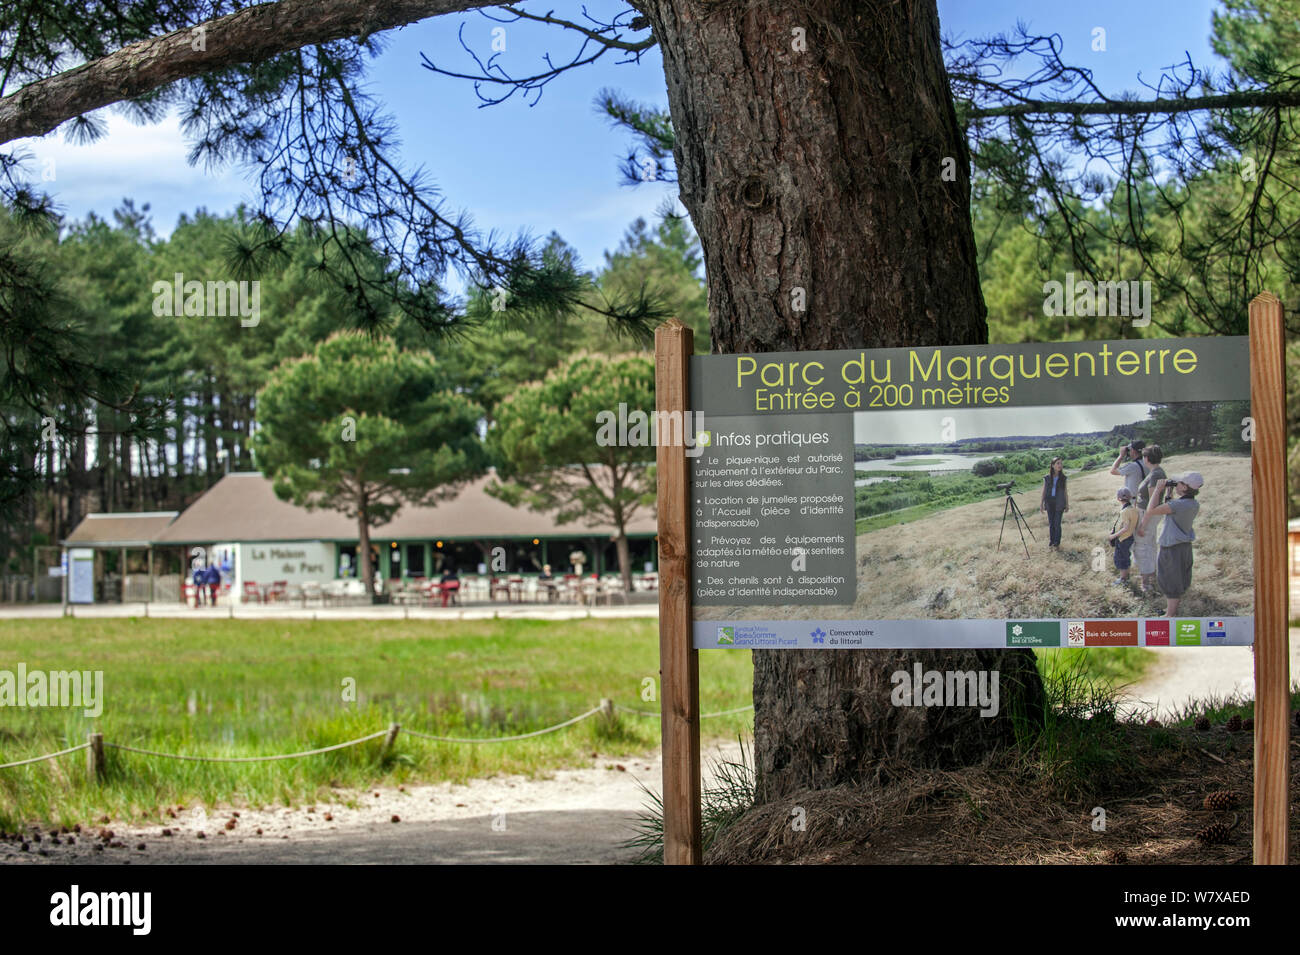 Ingresso e centro visitatori del Parc du Marquenterre riserva naturale presso la Baia della Somme, Piccardia, Francia, Maggio 2014. Foto Stock